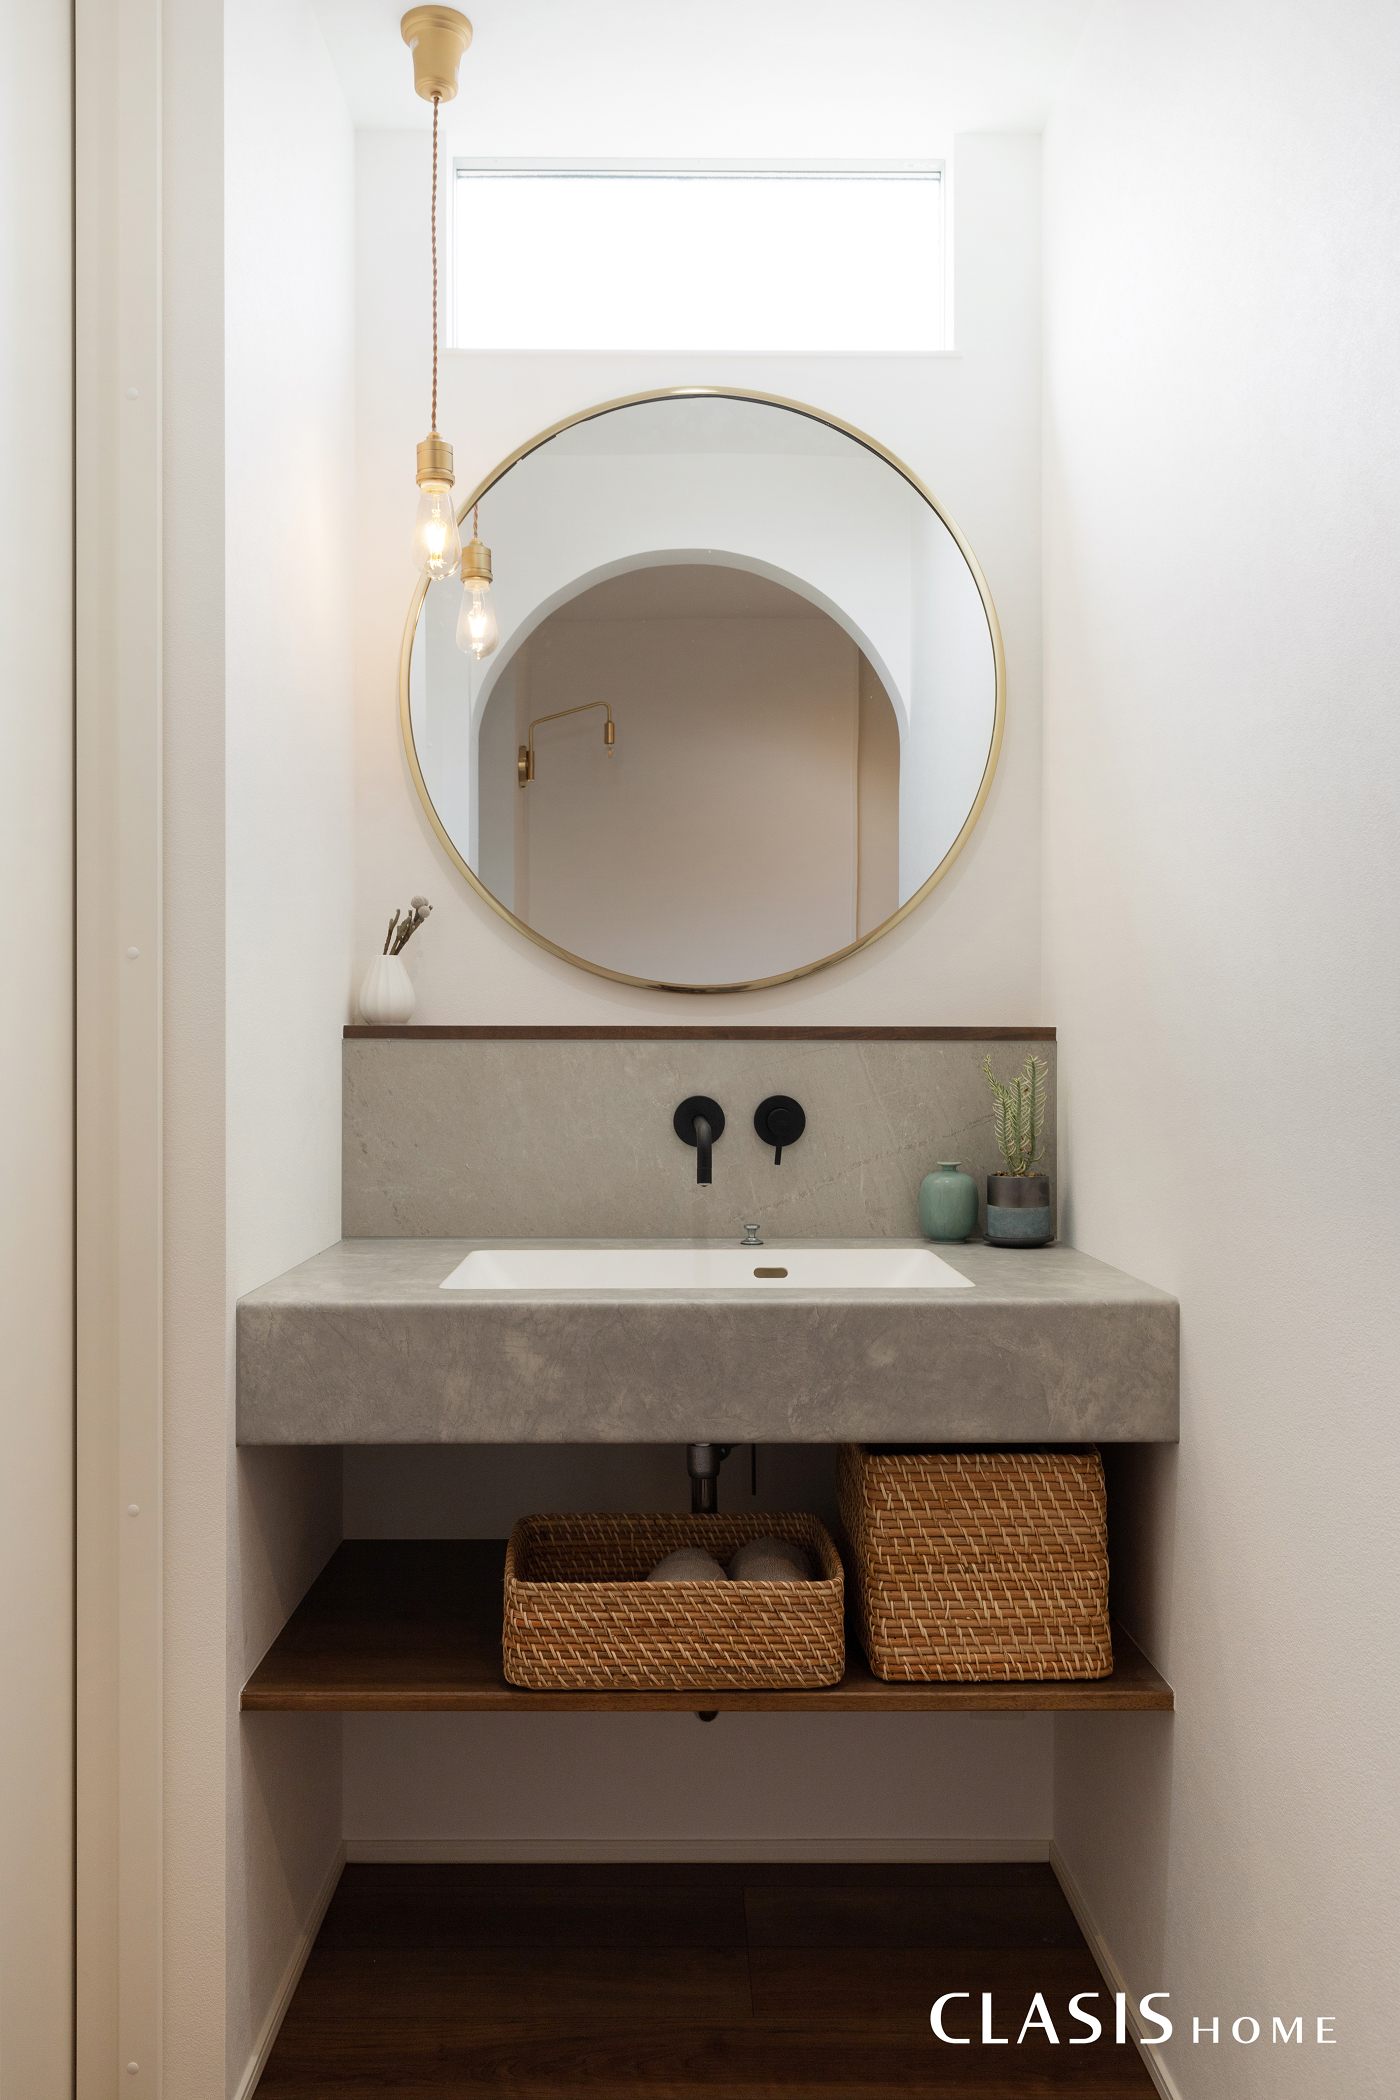 丸い鏡と直線的なラインが印象的な造作洗面台。